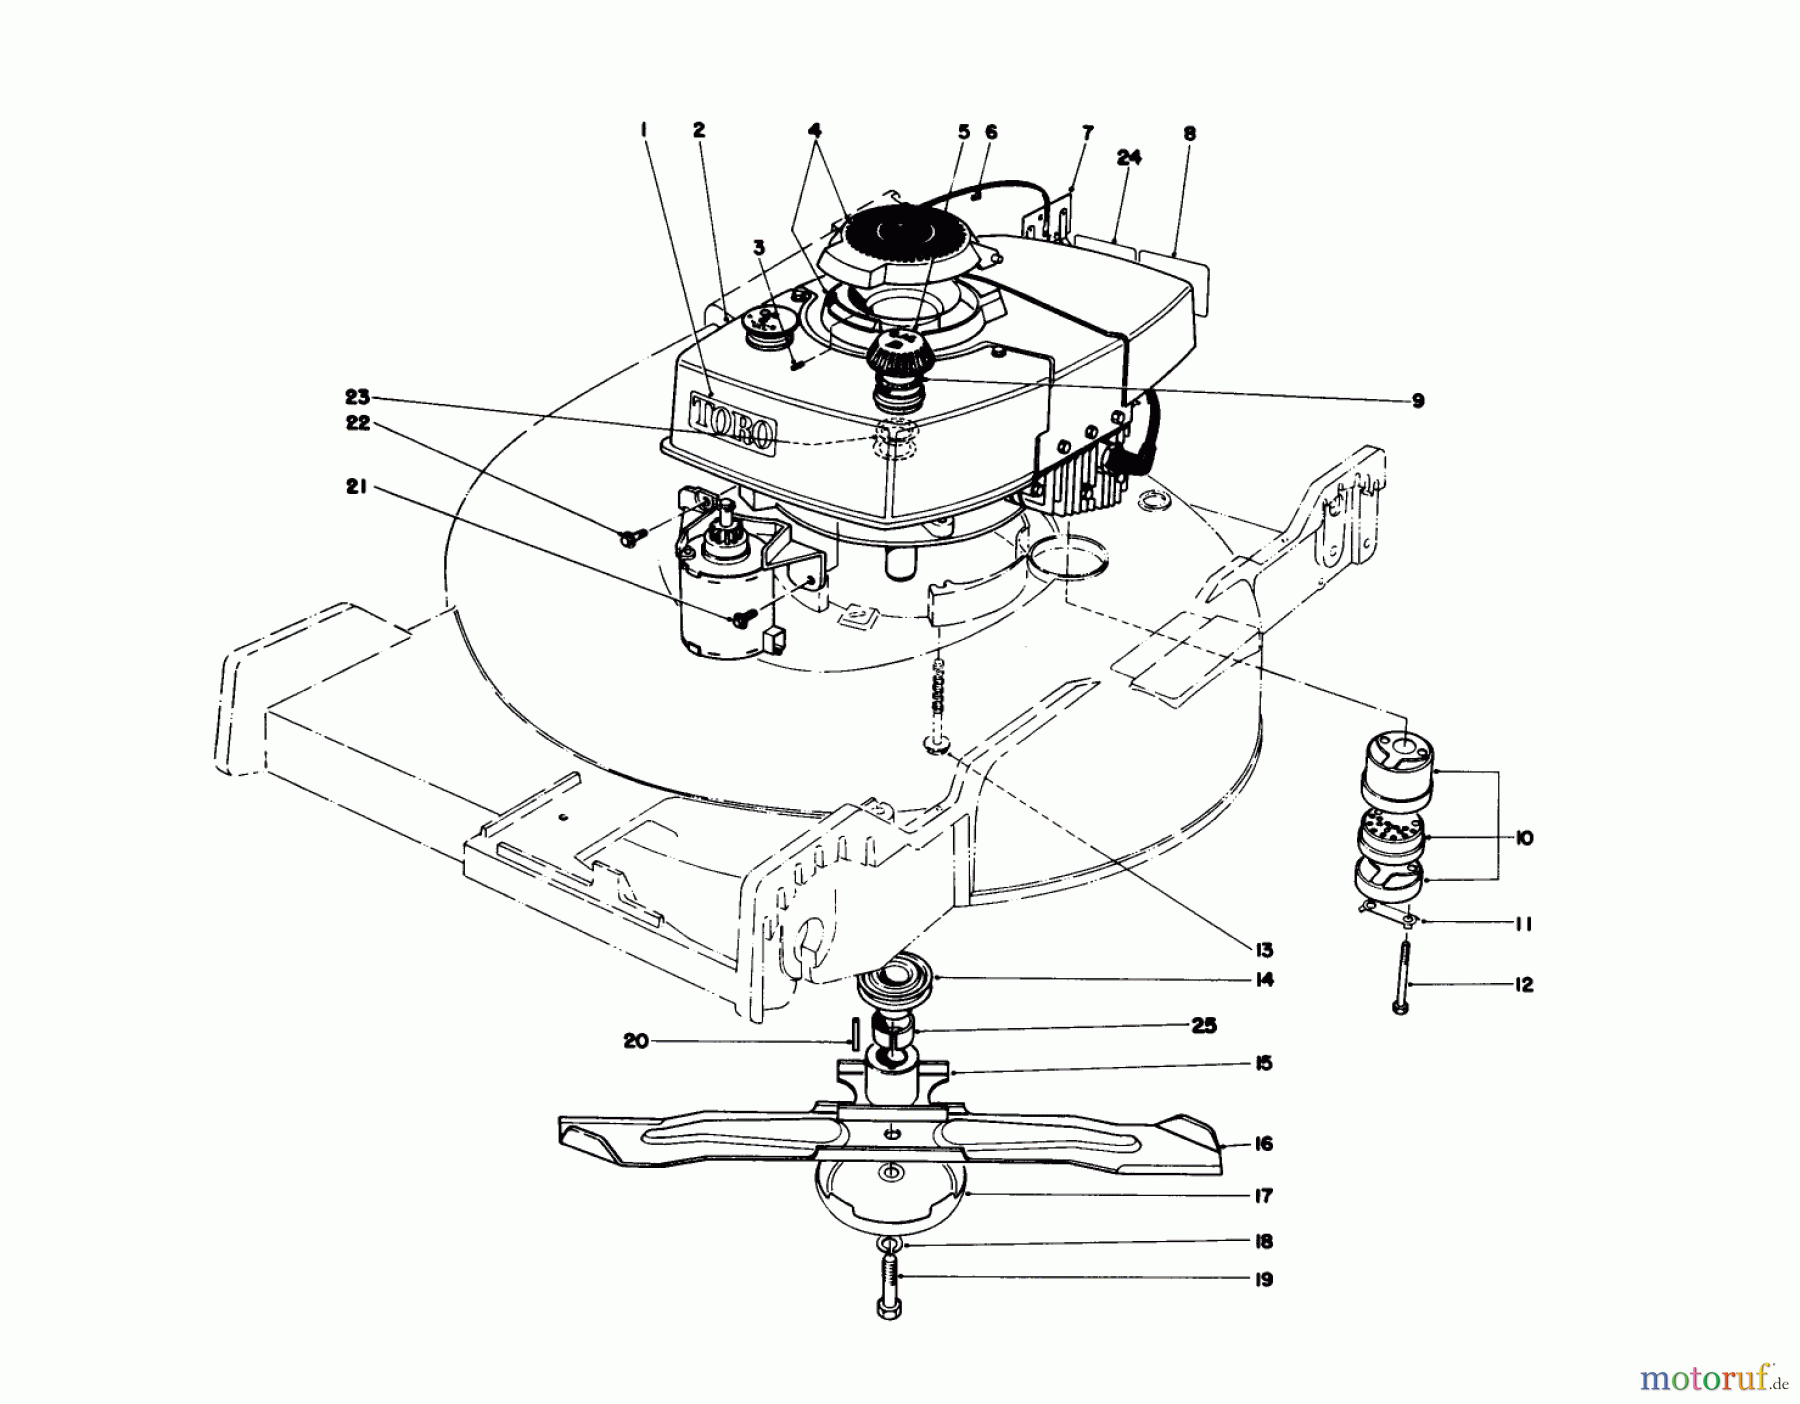  Toro Neu Mowers, Walk-Behind Seite 1 20740 - Toro Lawnmower, 1978 (8000001-8999999) ENGINE ASSEMBLY